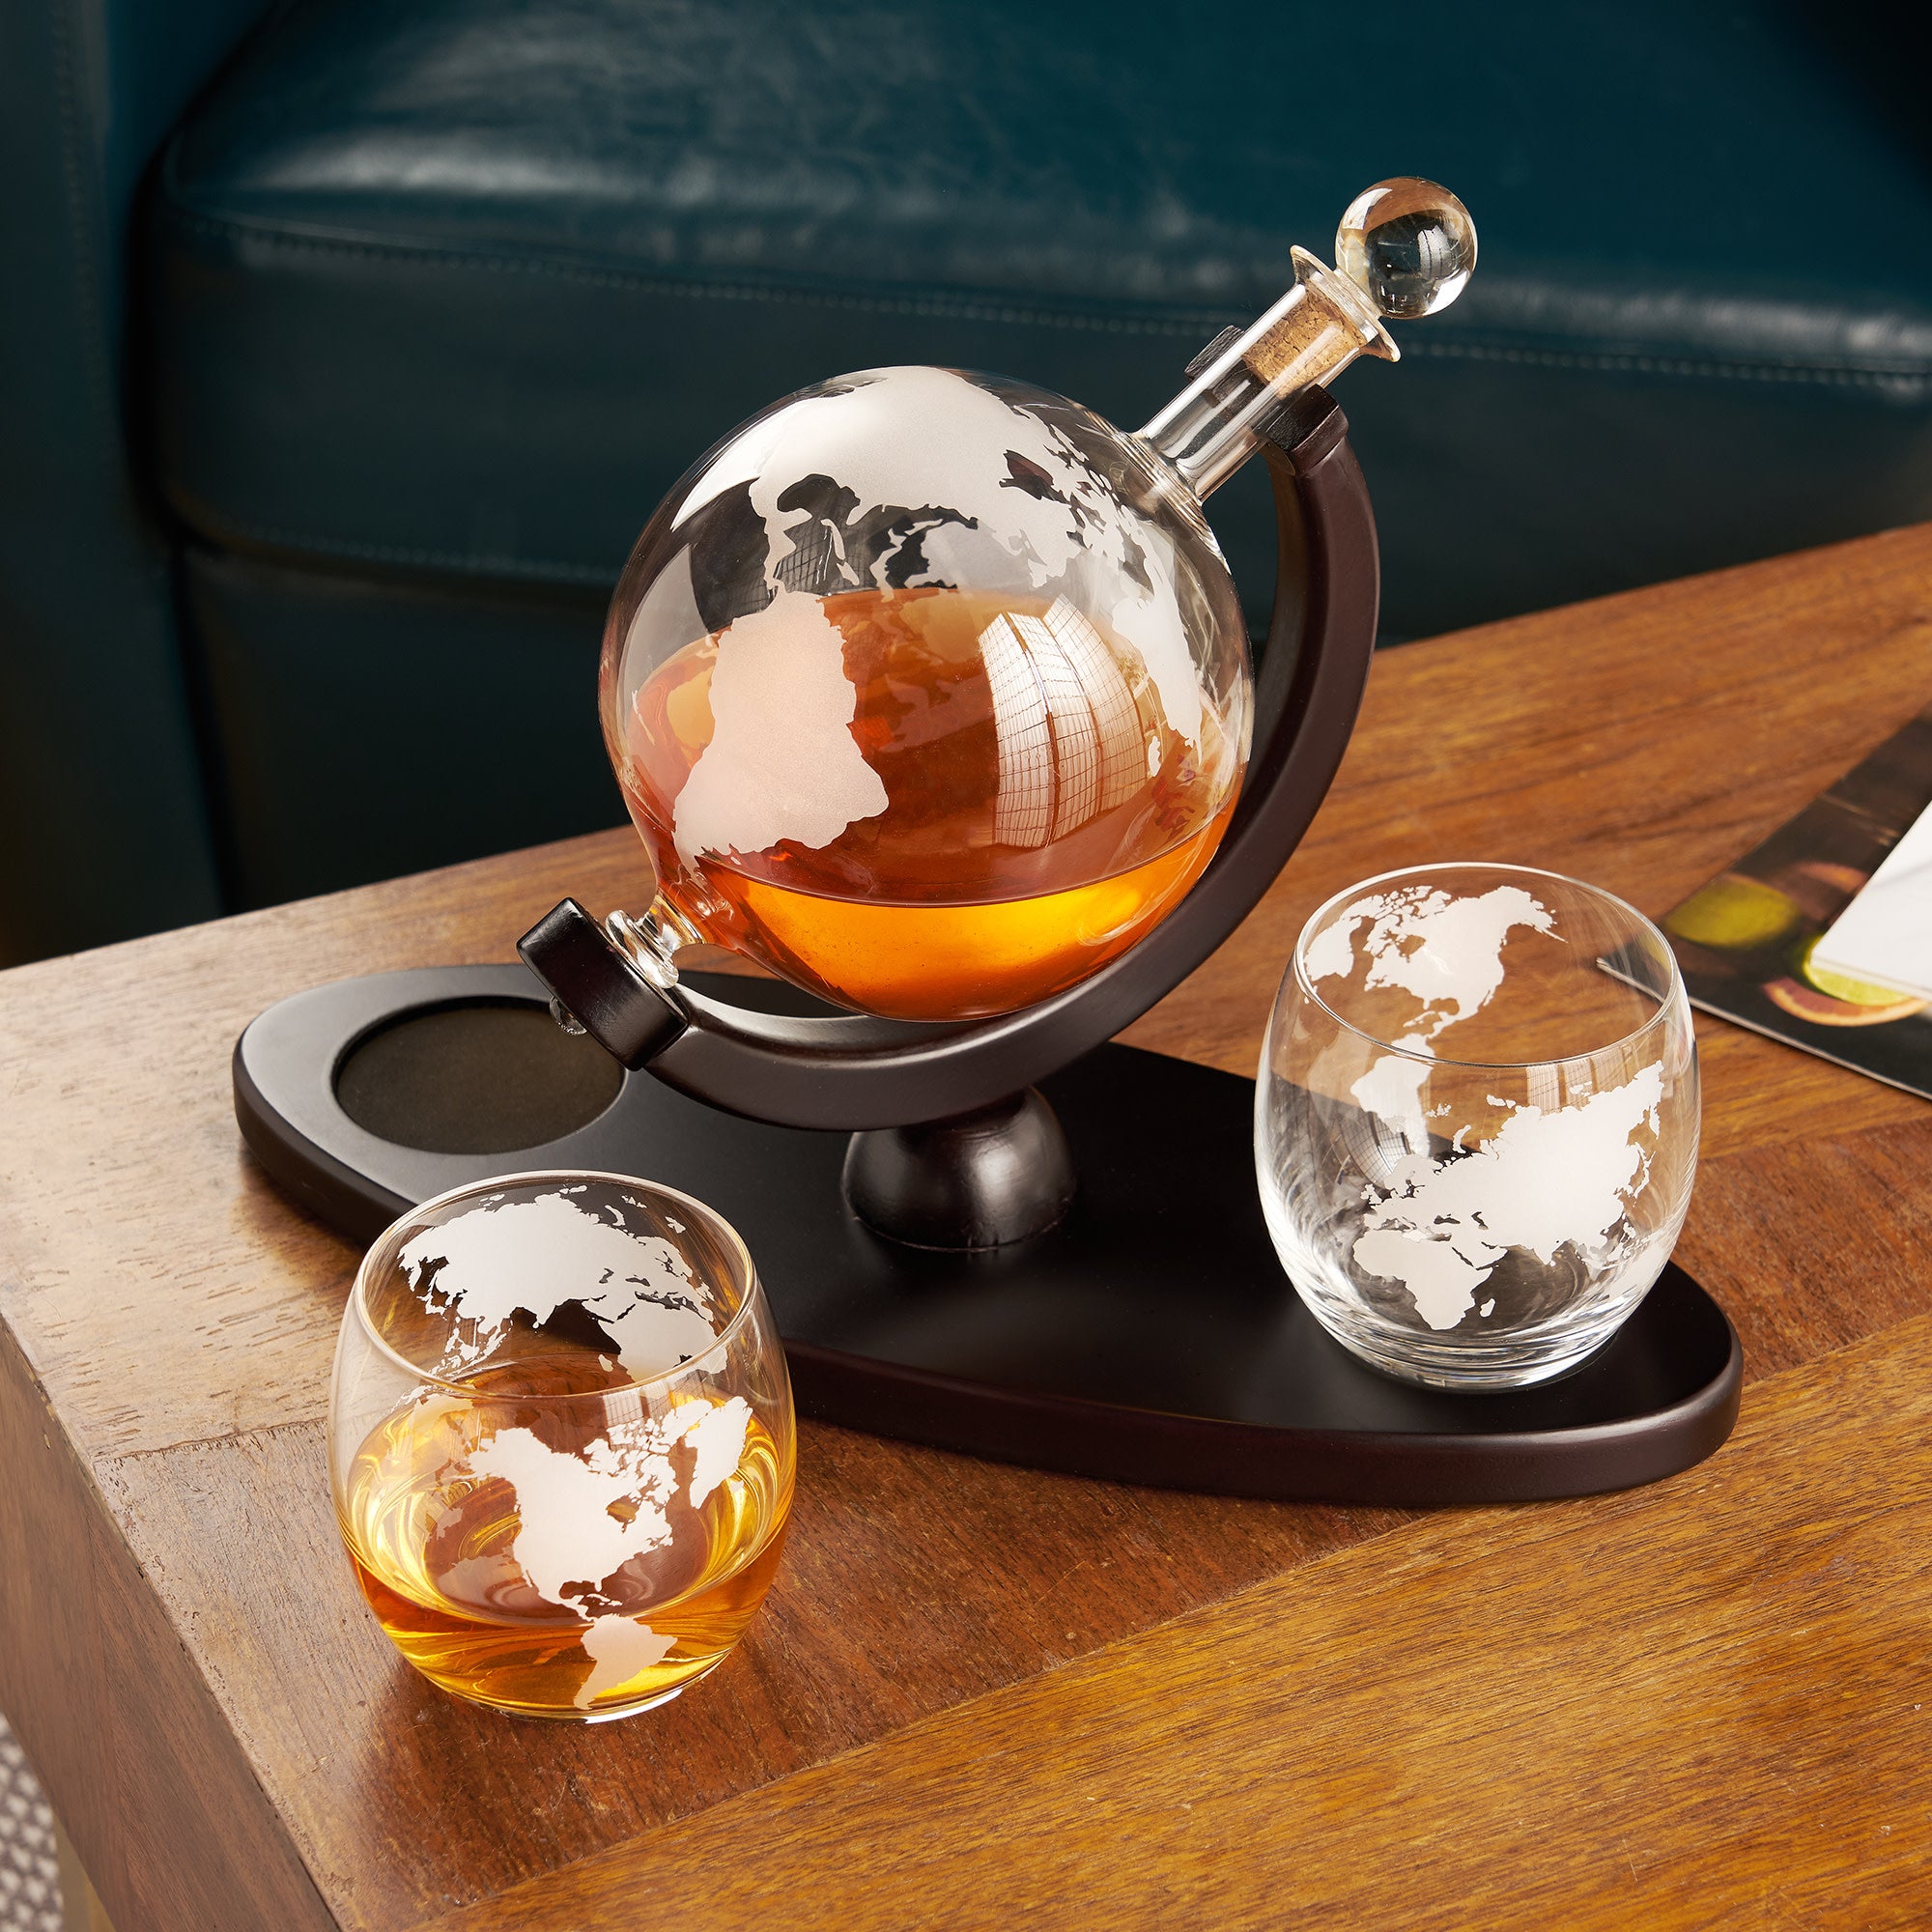 Viski Liquor Glass and Ice Sphere Box Set